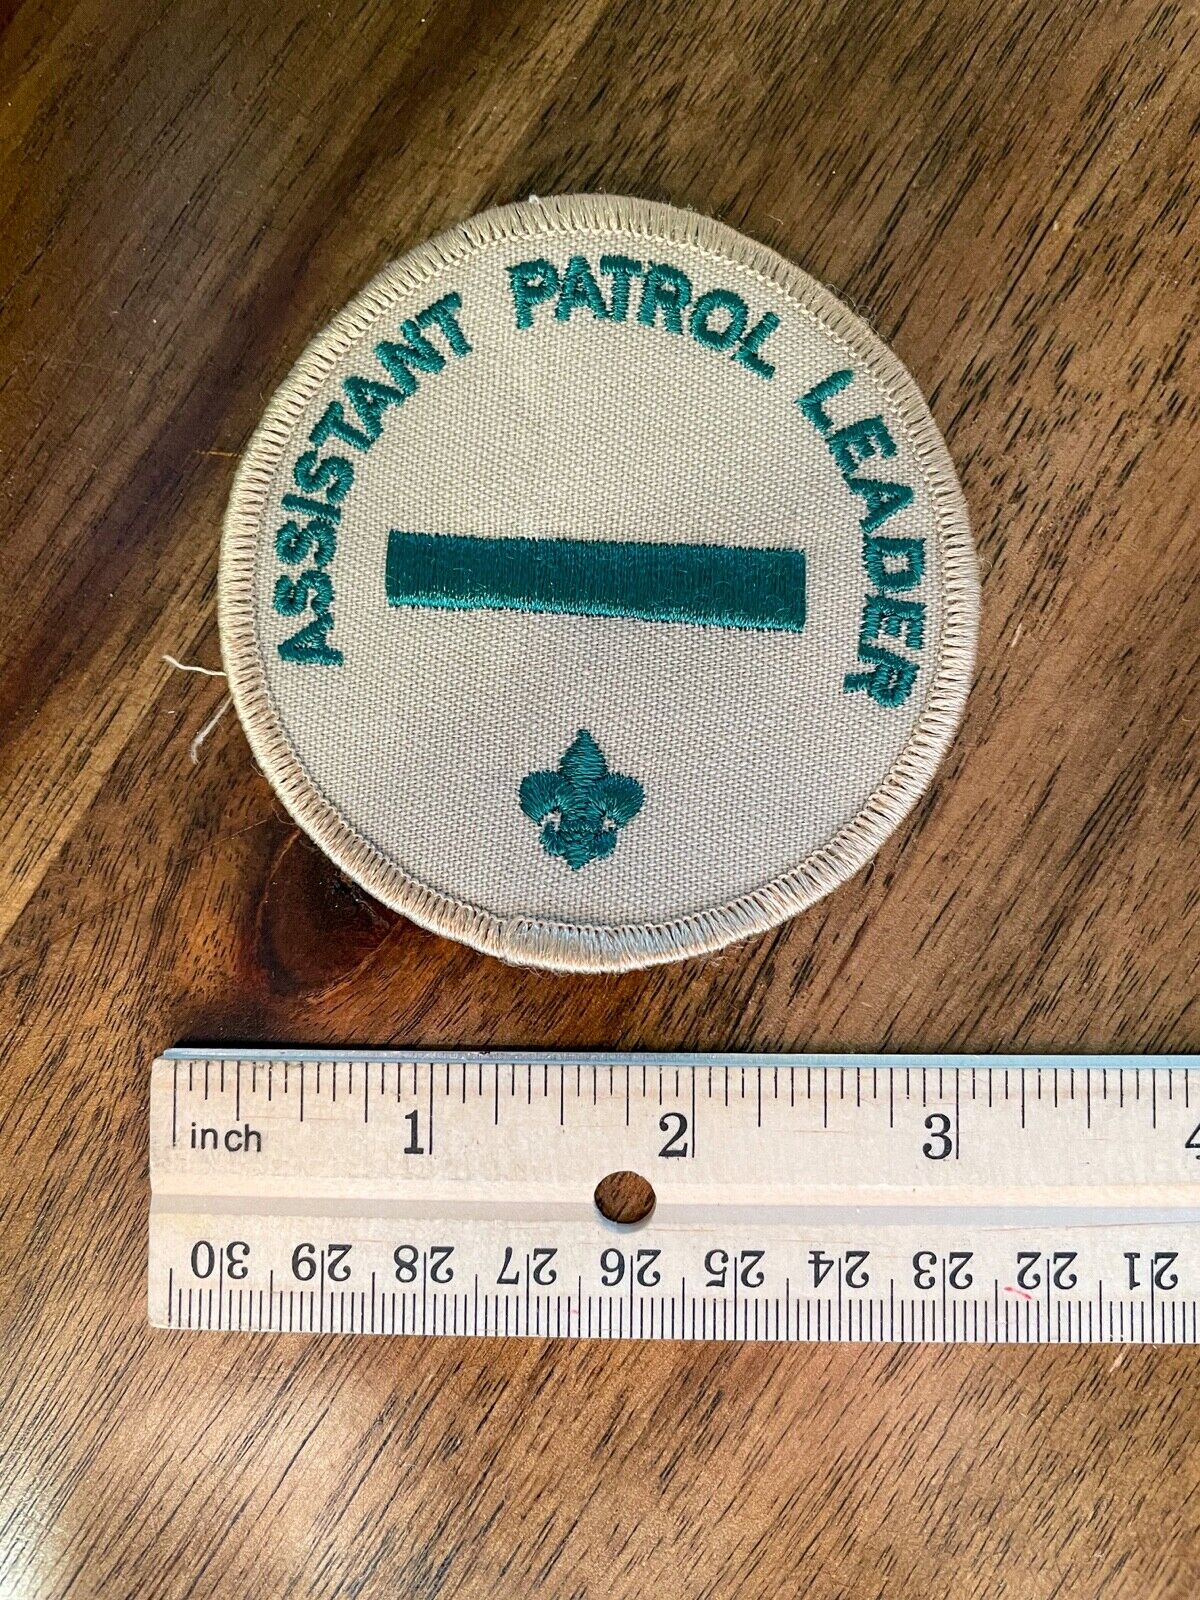 BSA Assistant Patrol Leader shoulder patch Vintage (1990s)